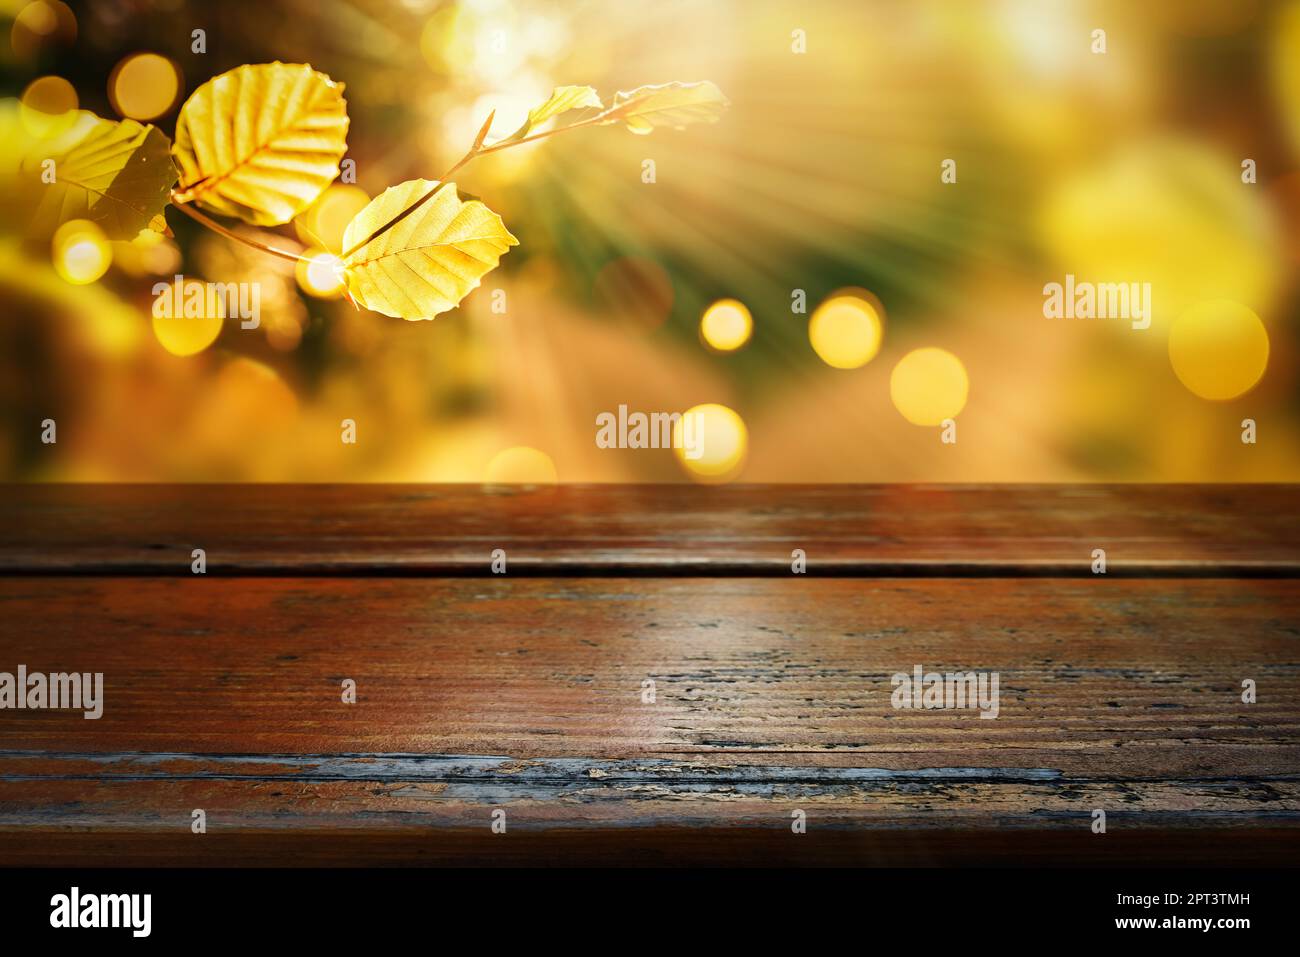 Fond d'automne lumineux avec table en bois. Poutres de soleil et feuilles colorées avec bokeh doré. Vider la table en bois vieillie pour une décoration d'automne Banque D'Images